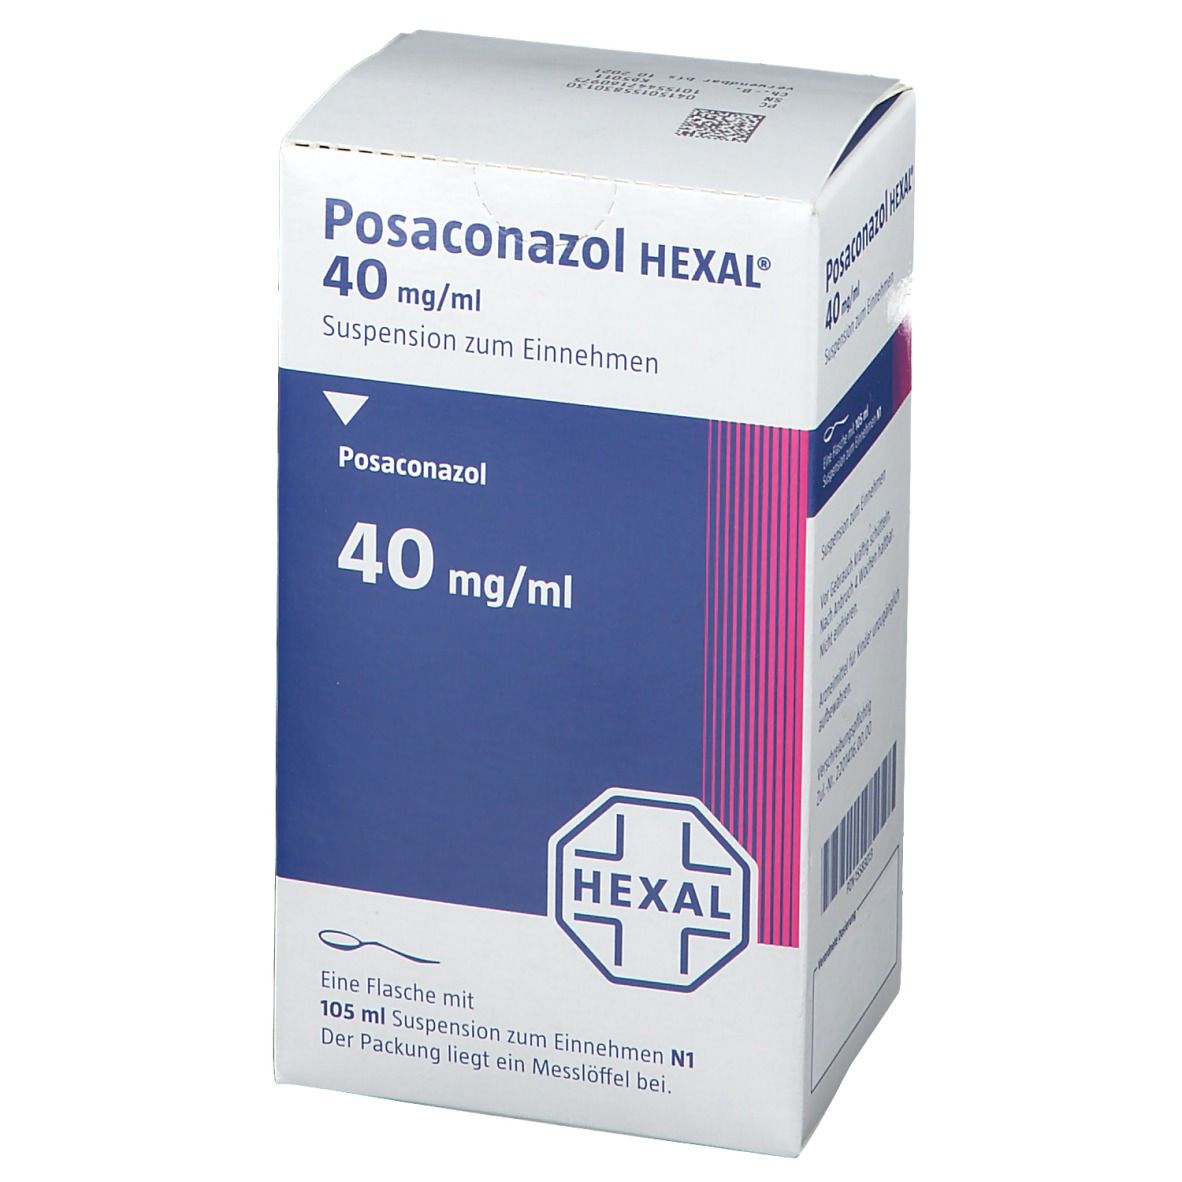 Posaconazol HEXAL® 40 mg/ml